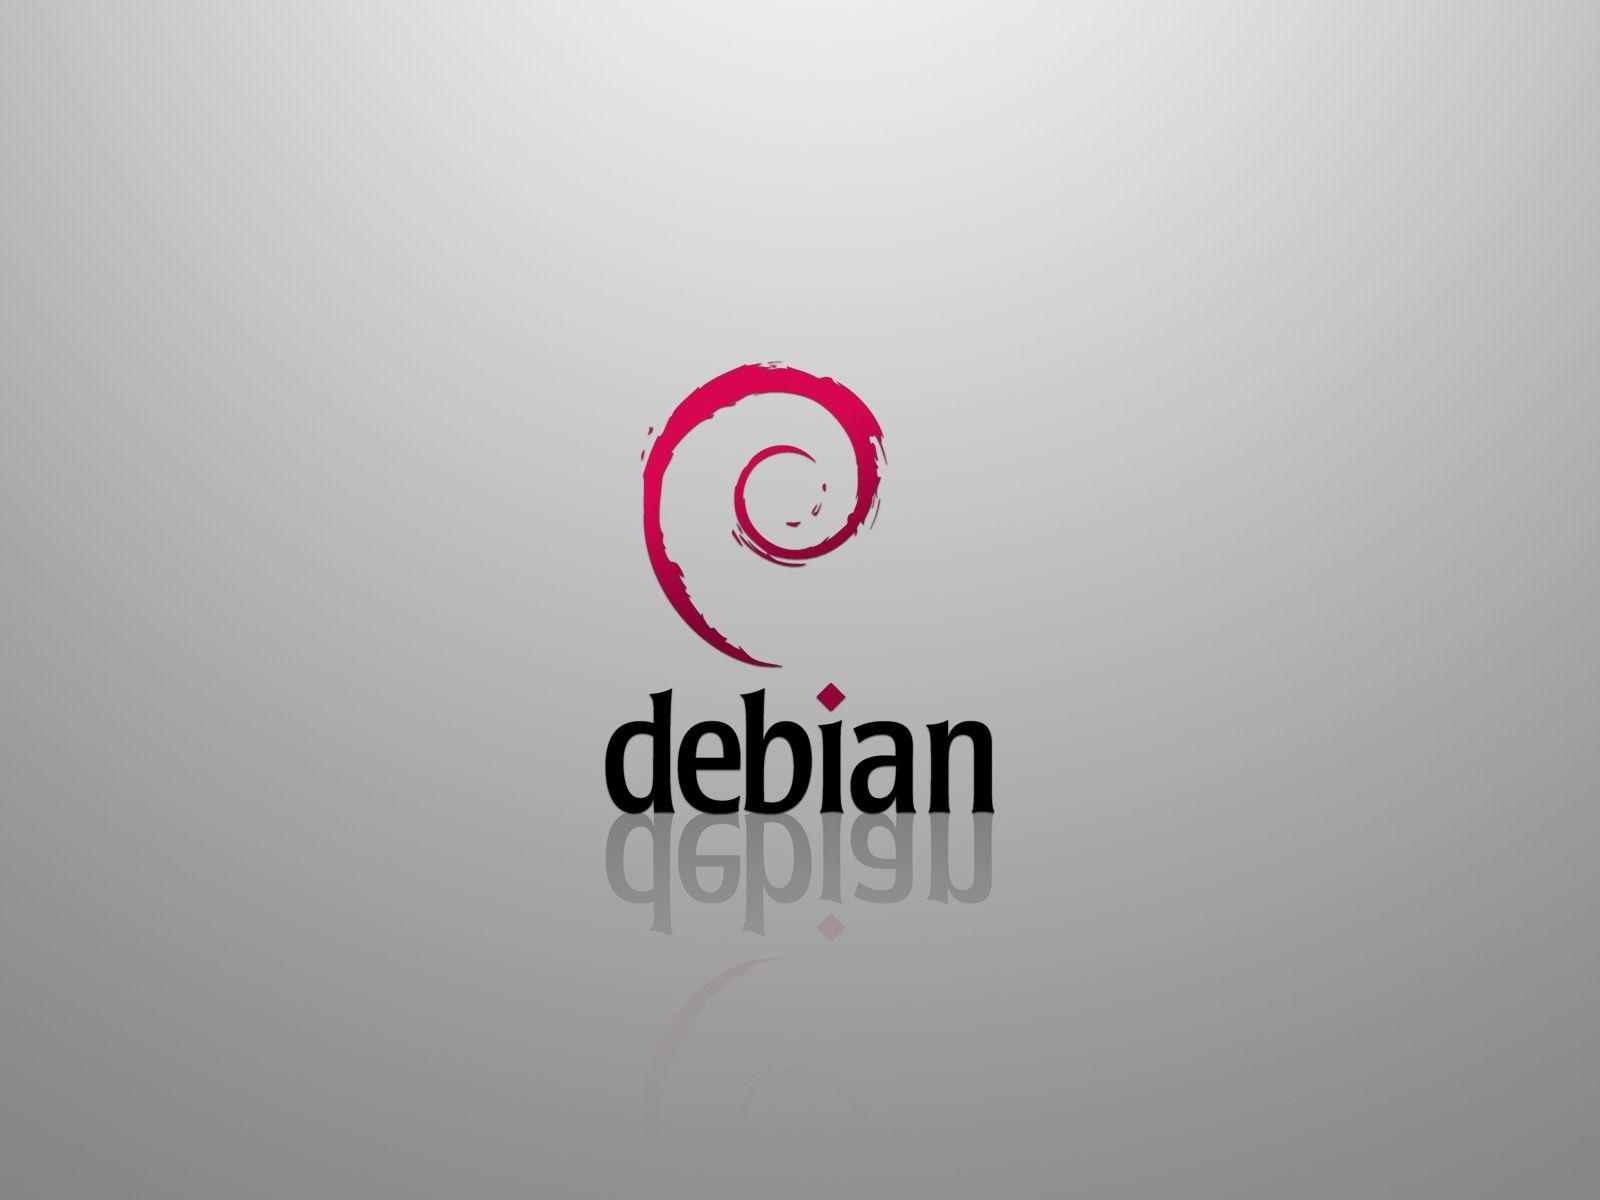 Debian Wallpaper Linux Computers Wallpaper in jpg format for free